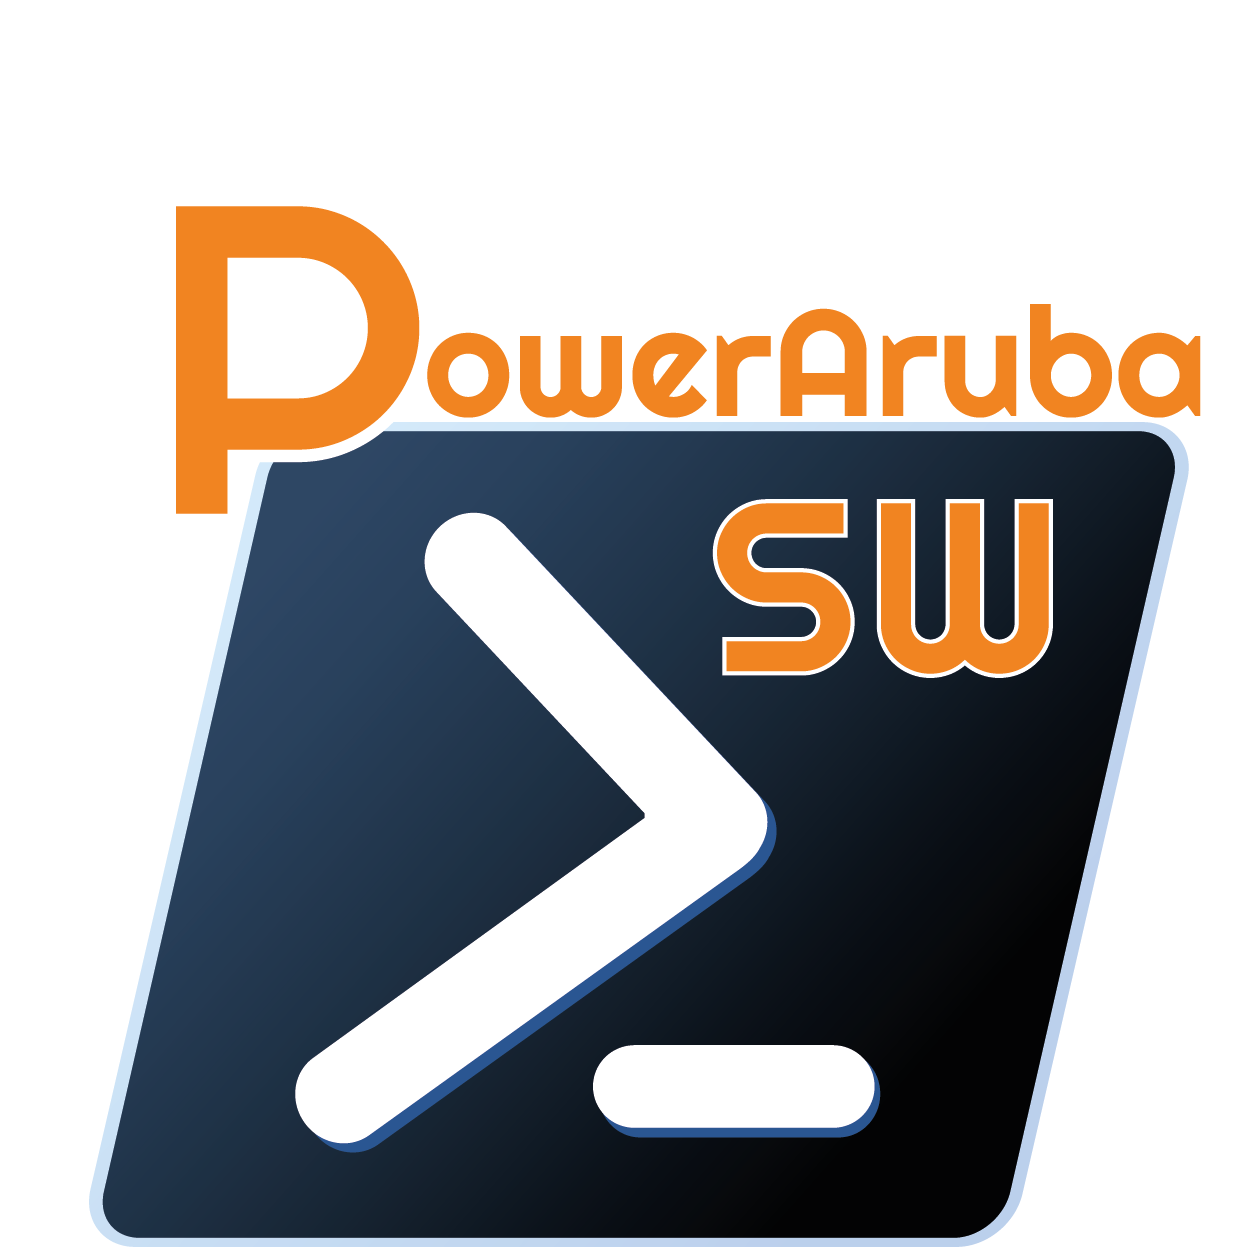 PowerArubaSW icon